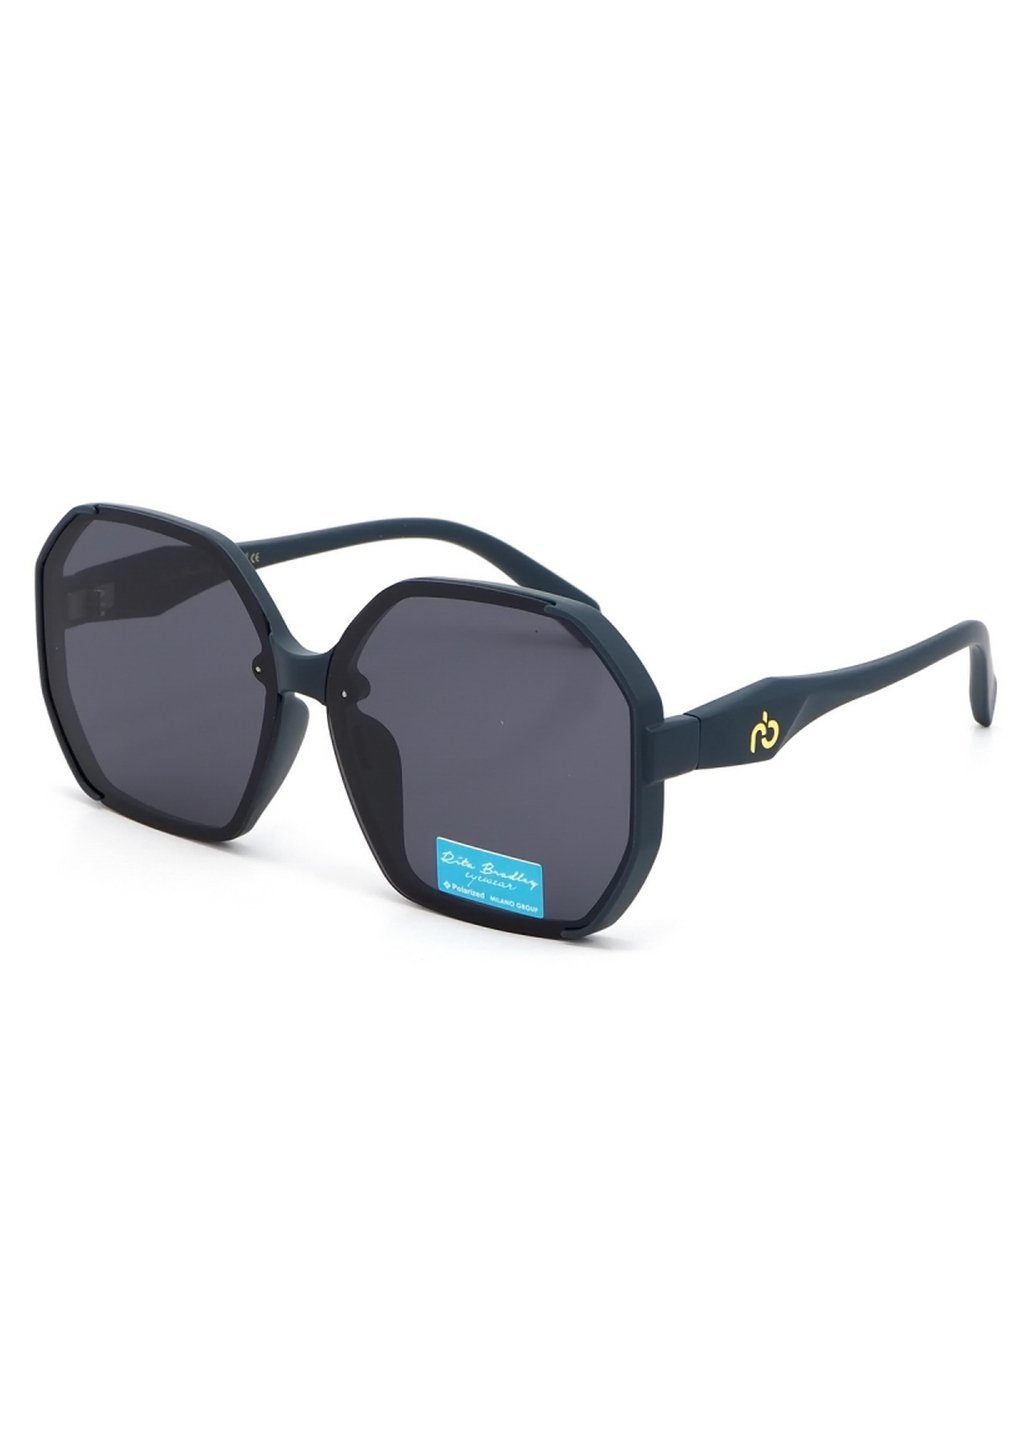 Купить Женские солнцезащитные очки Rita Bradley с поляризацией RB729 112069 в интернет-магазине